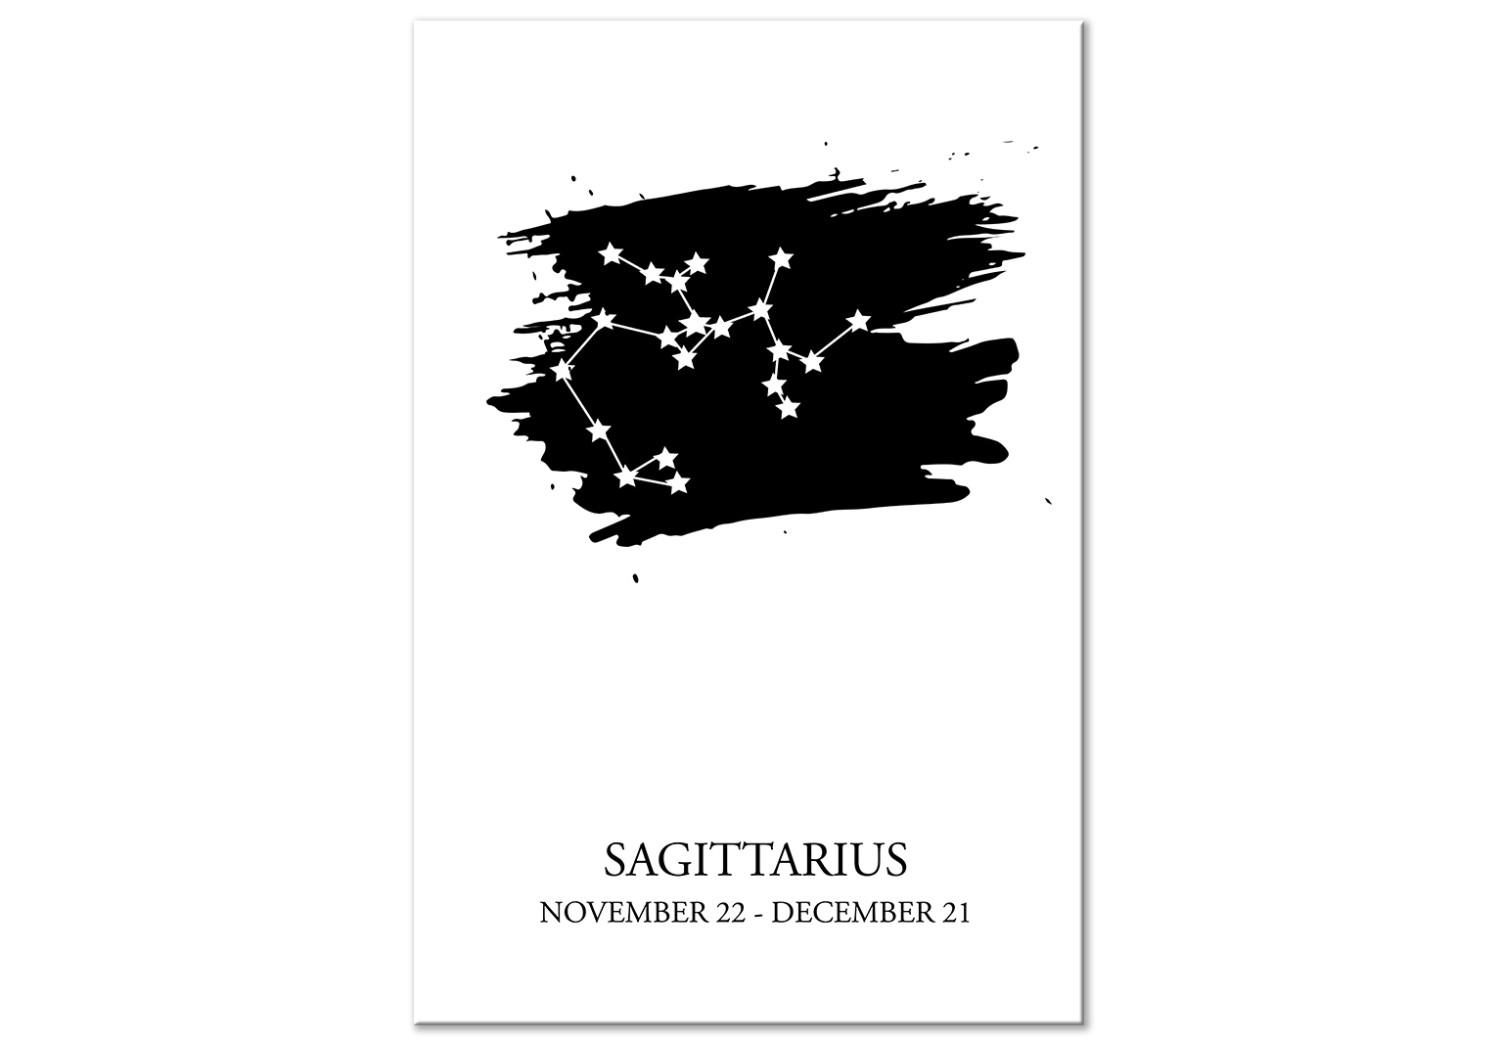 Cuadro decorativo Signo zodiacal Sagitario (1 pieza) - motivo gráfico con inscripciones